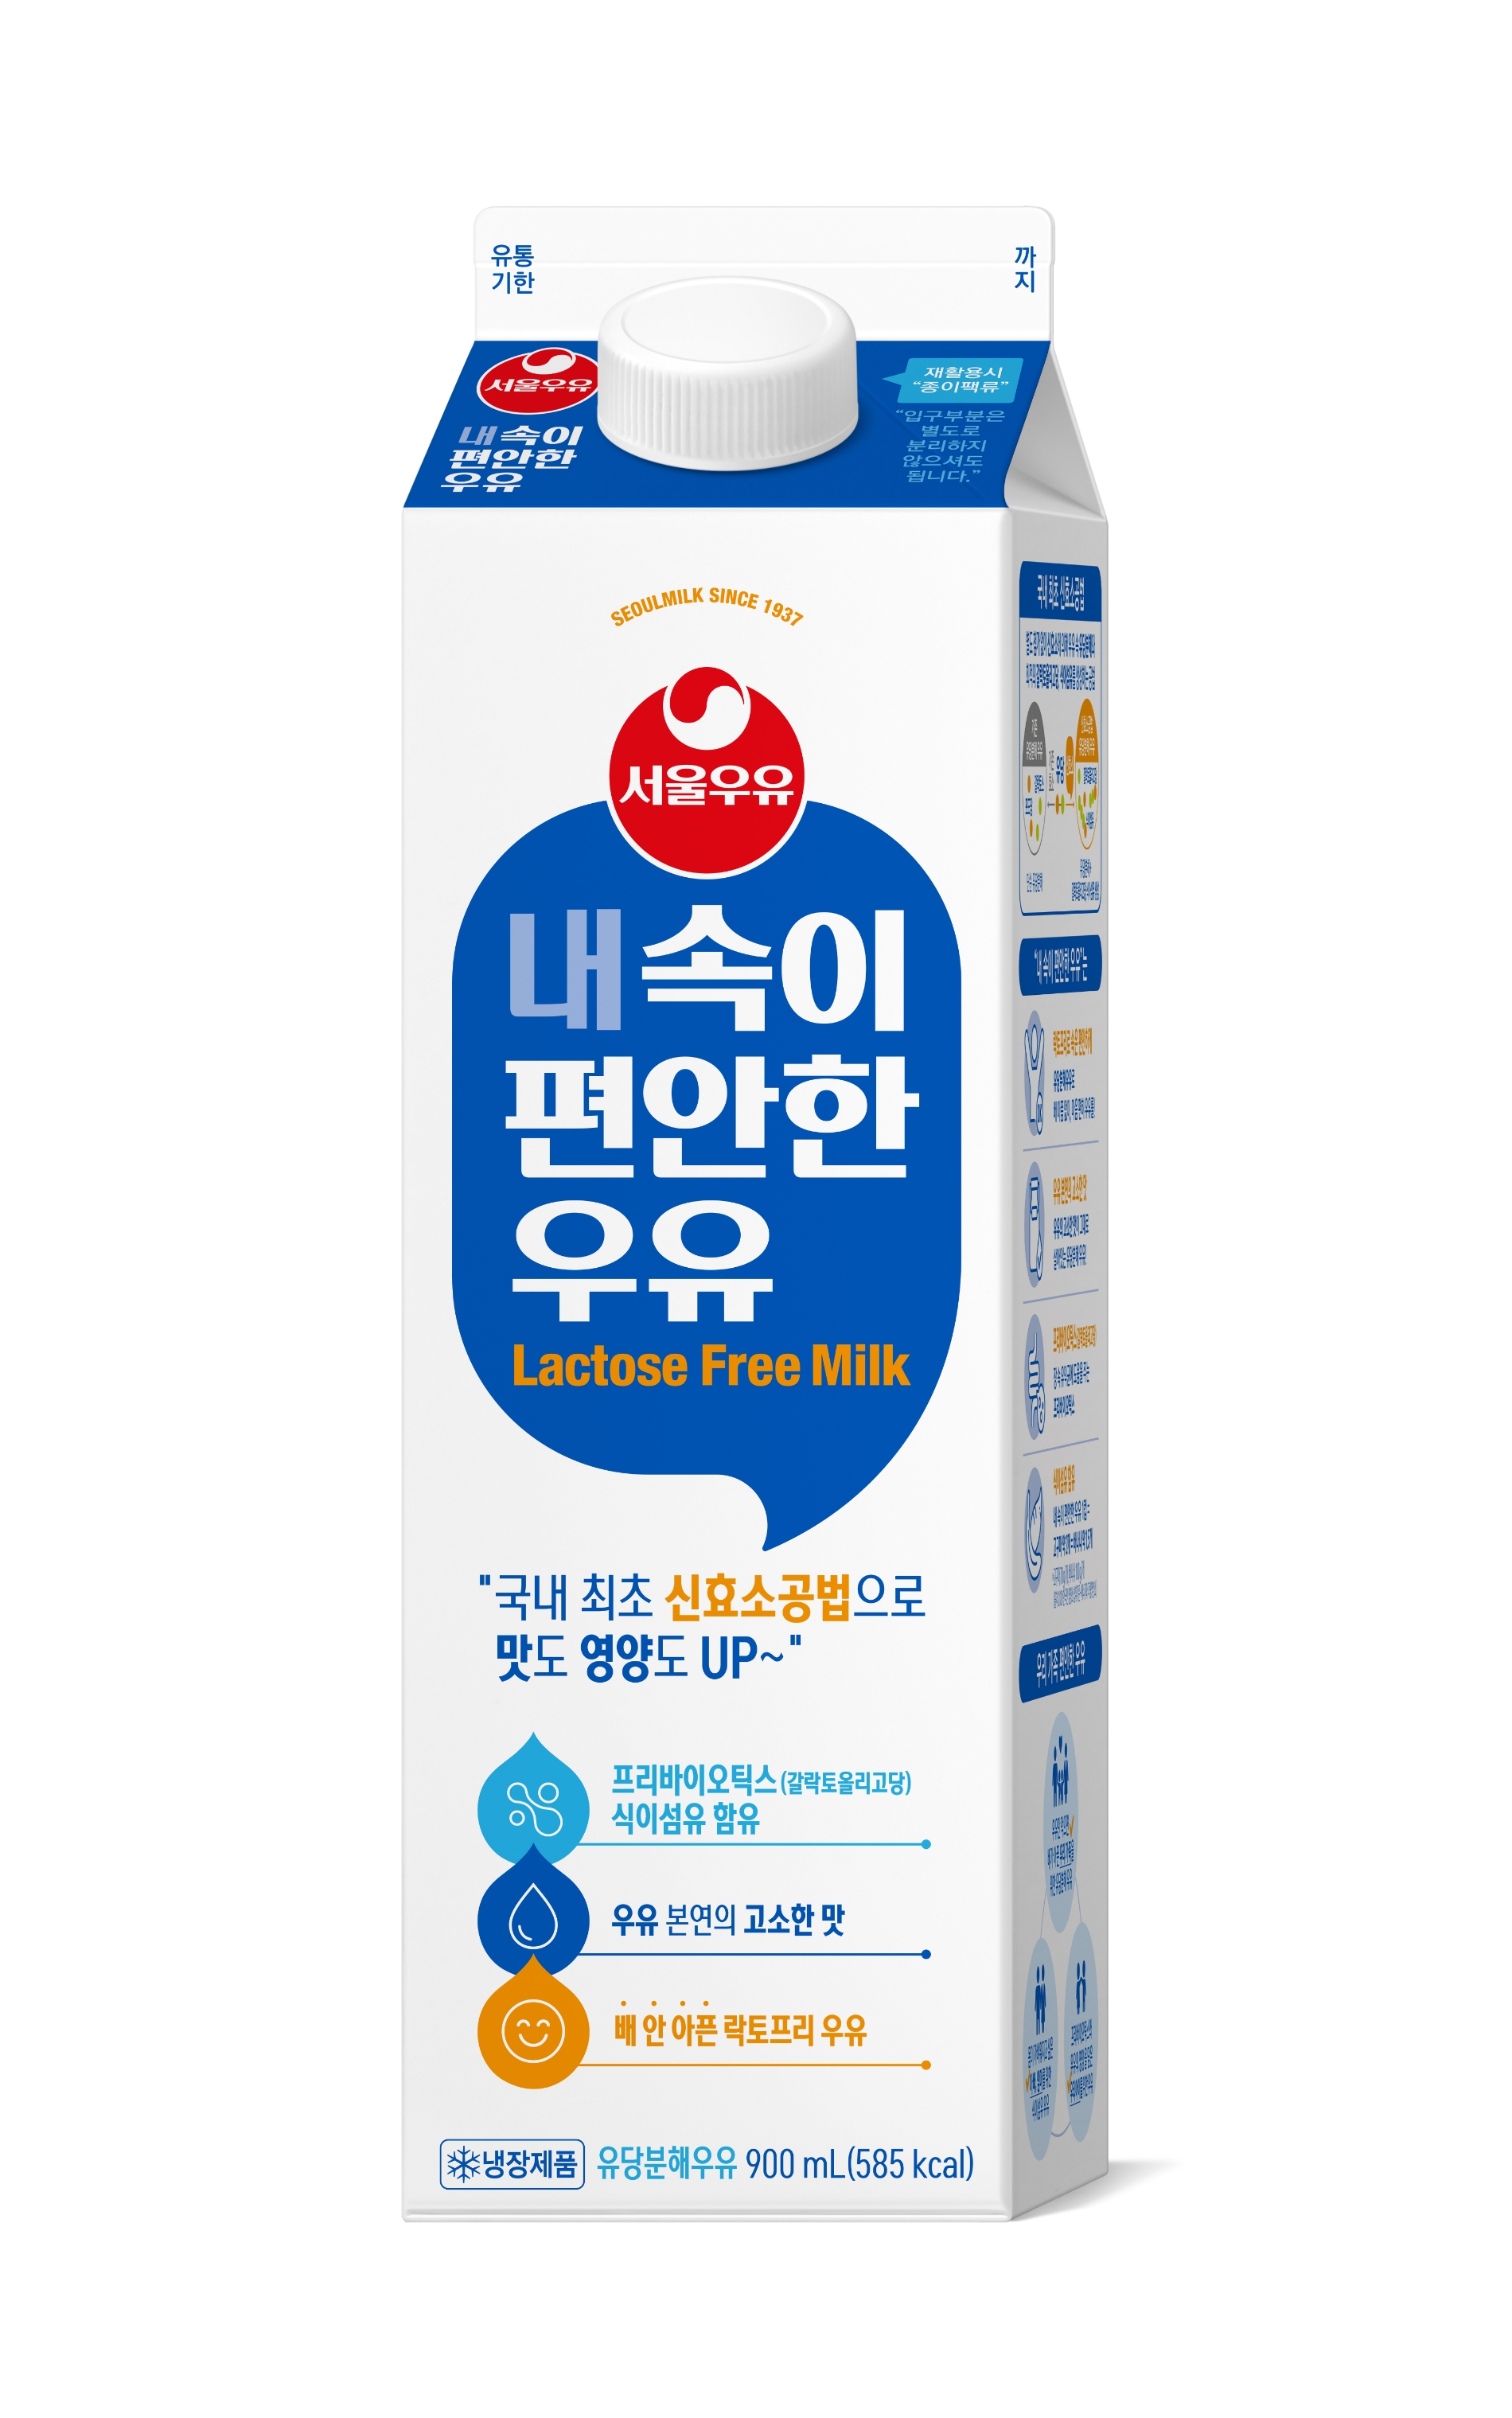 [유통 이슈] 서울우유협동조합, 온 가족 함께 마시는 ‘내 속이 편안한 우유’ 출시 外